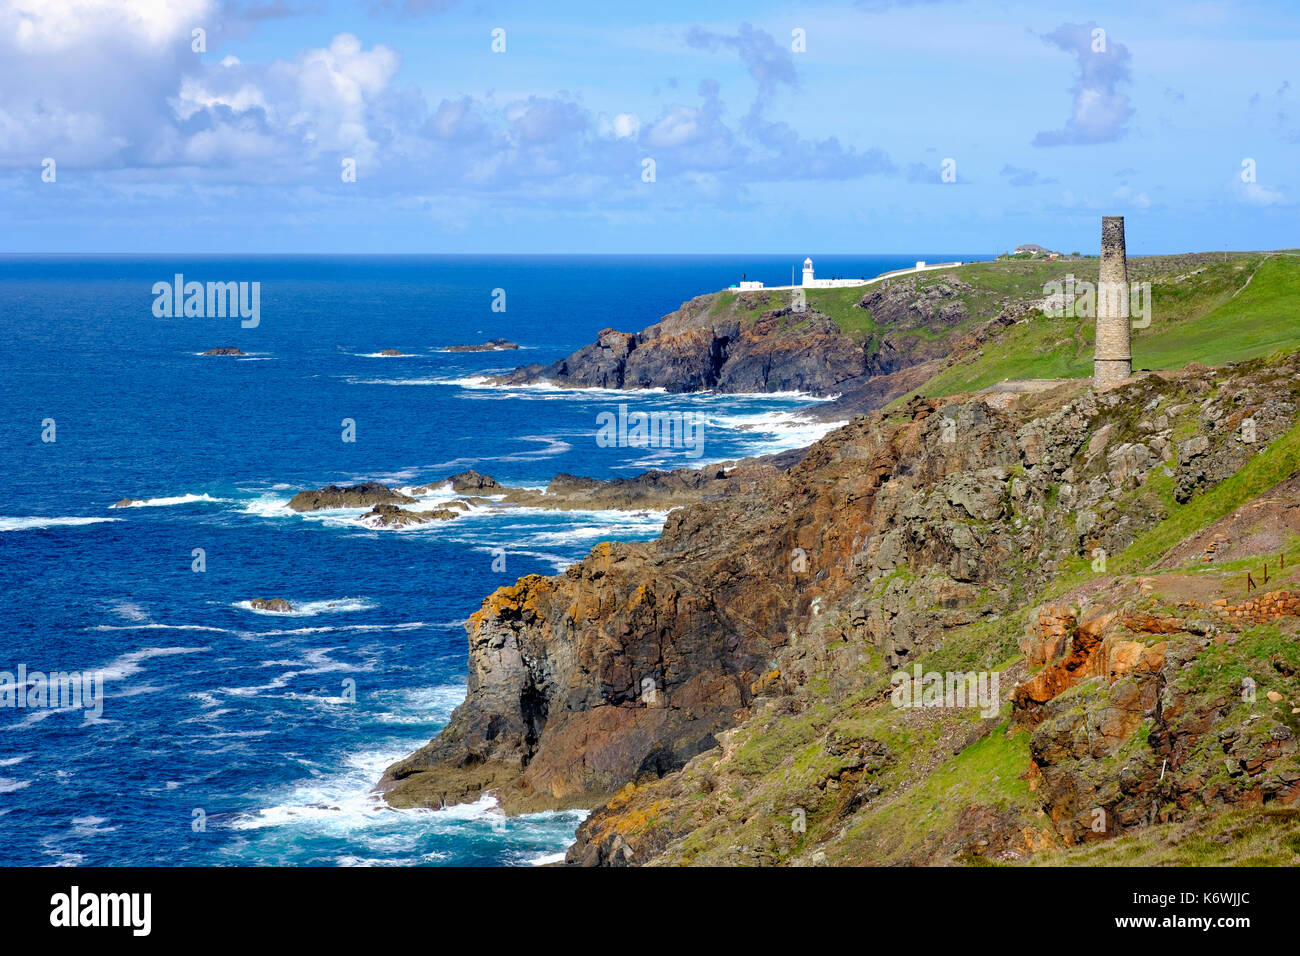 Felsige Küste mit alten Schornstein aus der Levante Mine und Pendeen Lighthouse, St Just in Penwith, Cornwall, England, Großbritannien Stockfoto